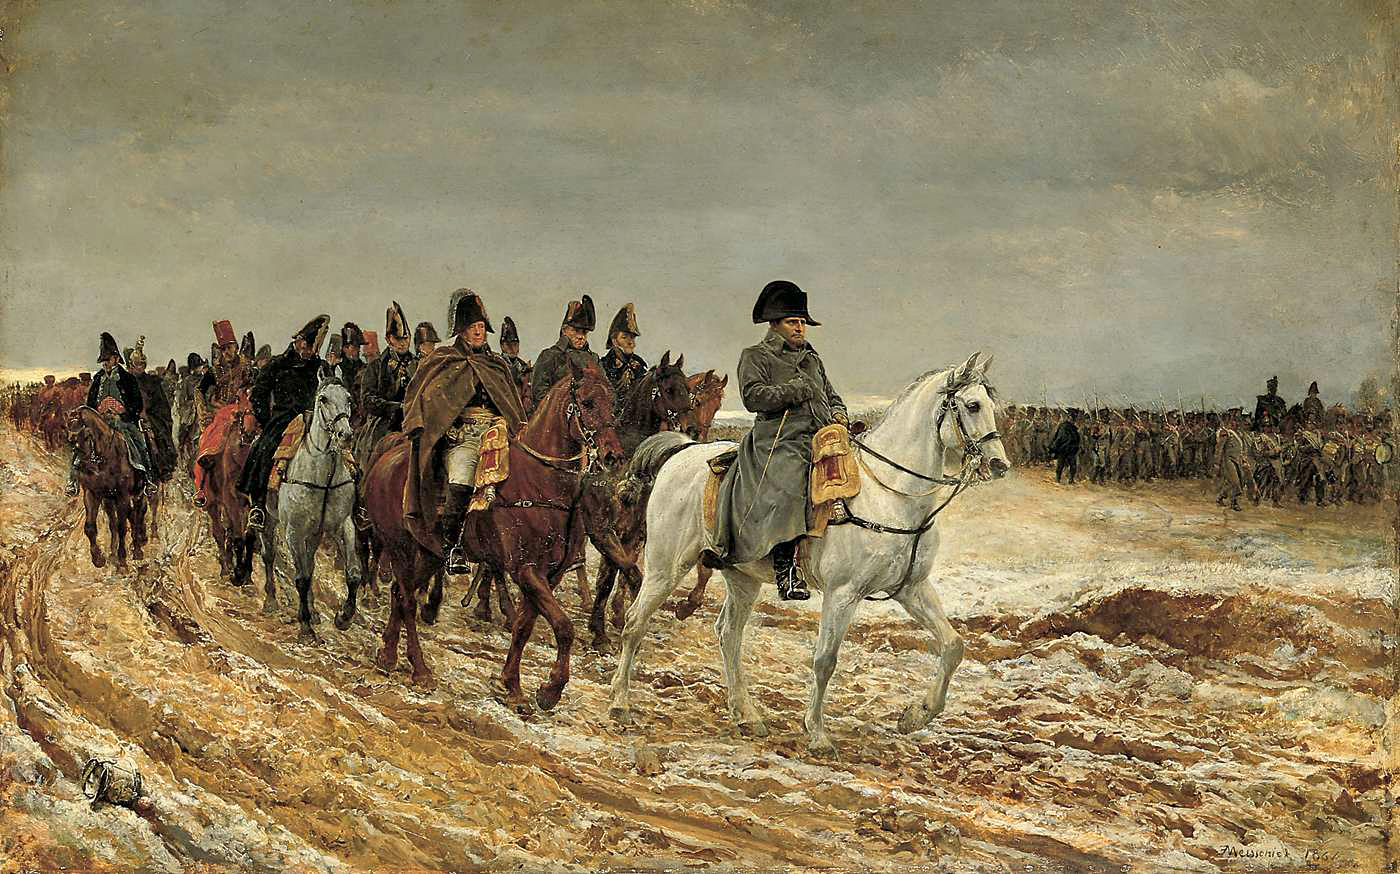 Eine Armee reitet, angeführt von einem Mann auf einem weißen Pferd (Napoleon), über einen kargen, schneebedeckten Boden.